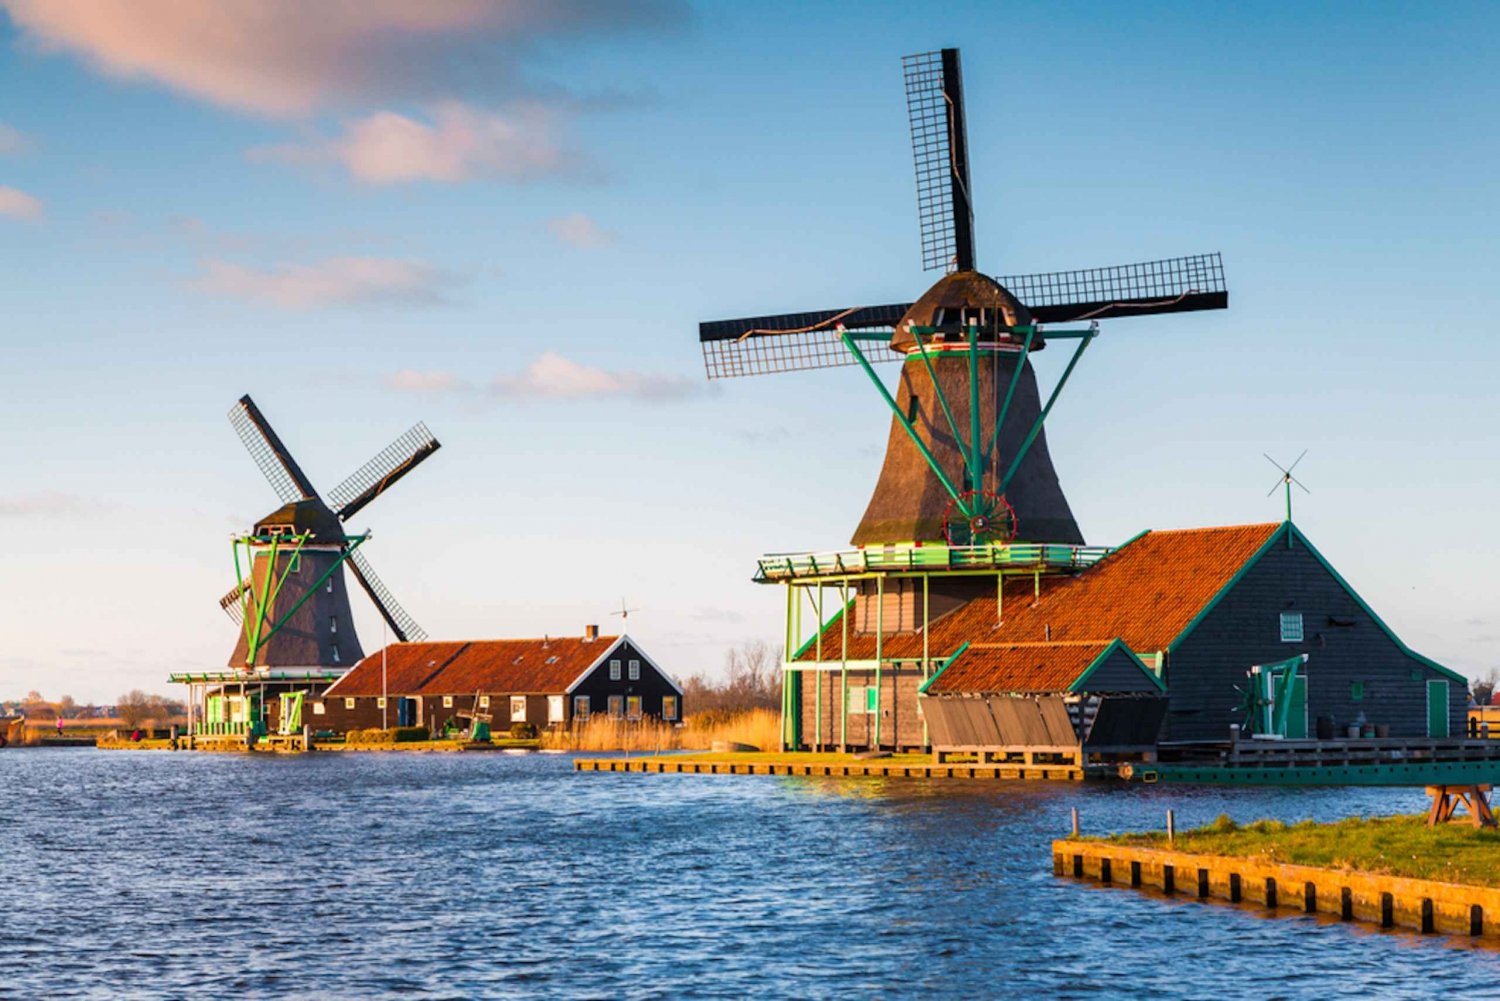 From Amsterdam: Windmills of Zaanse Schans Tour in Spanish